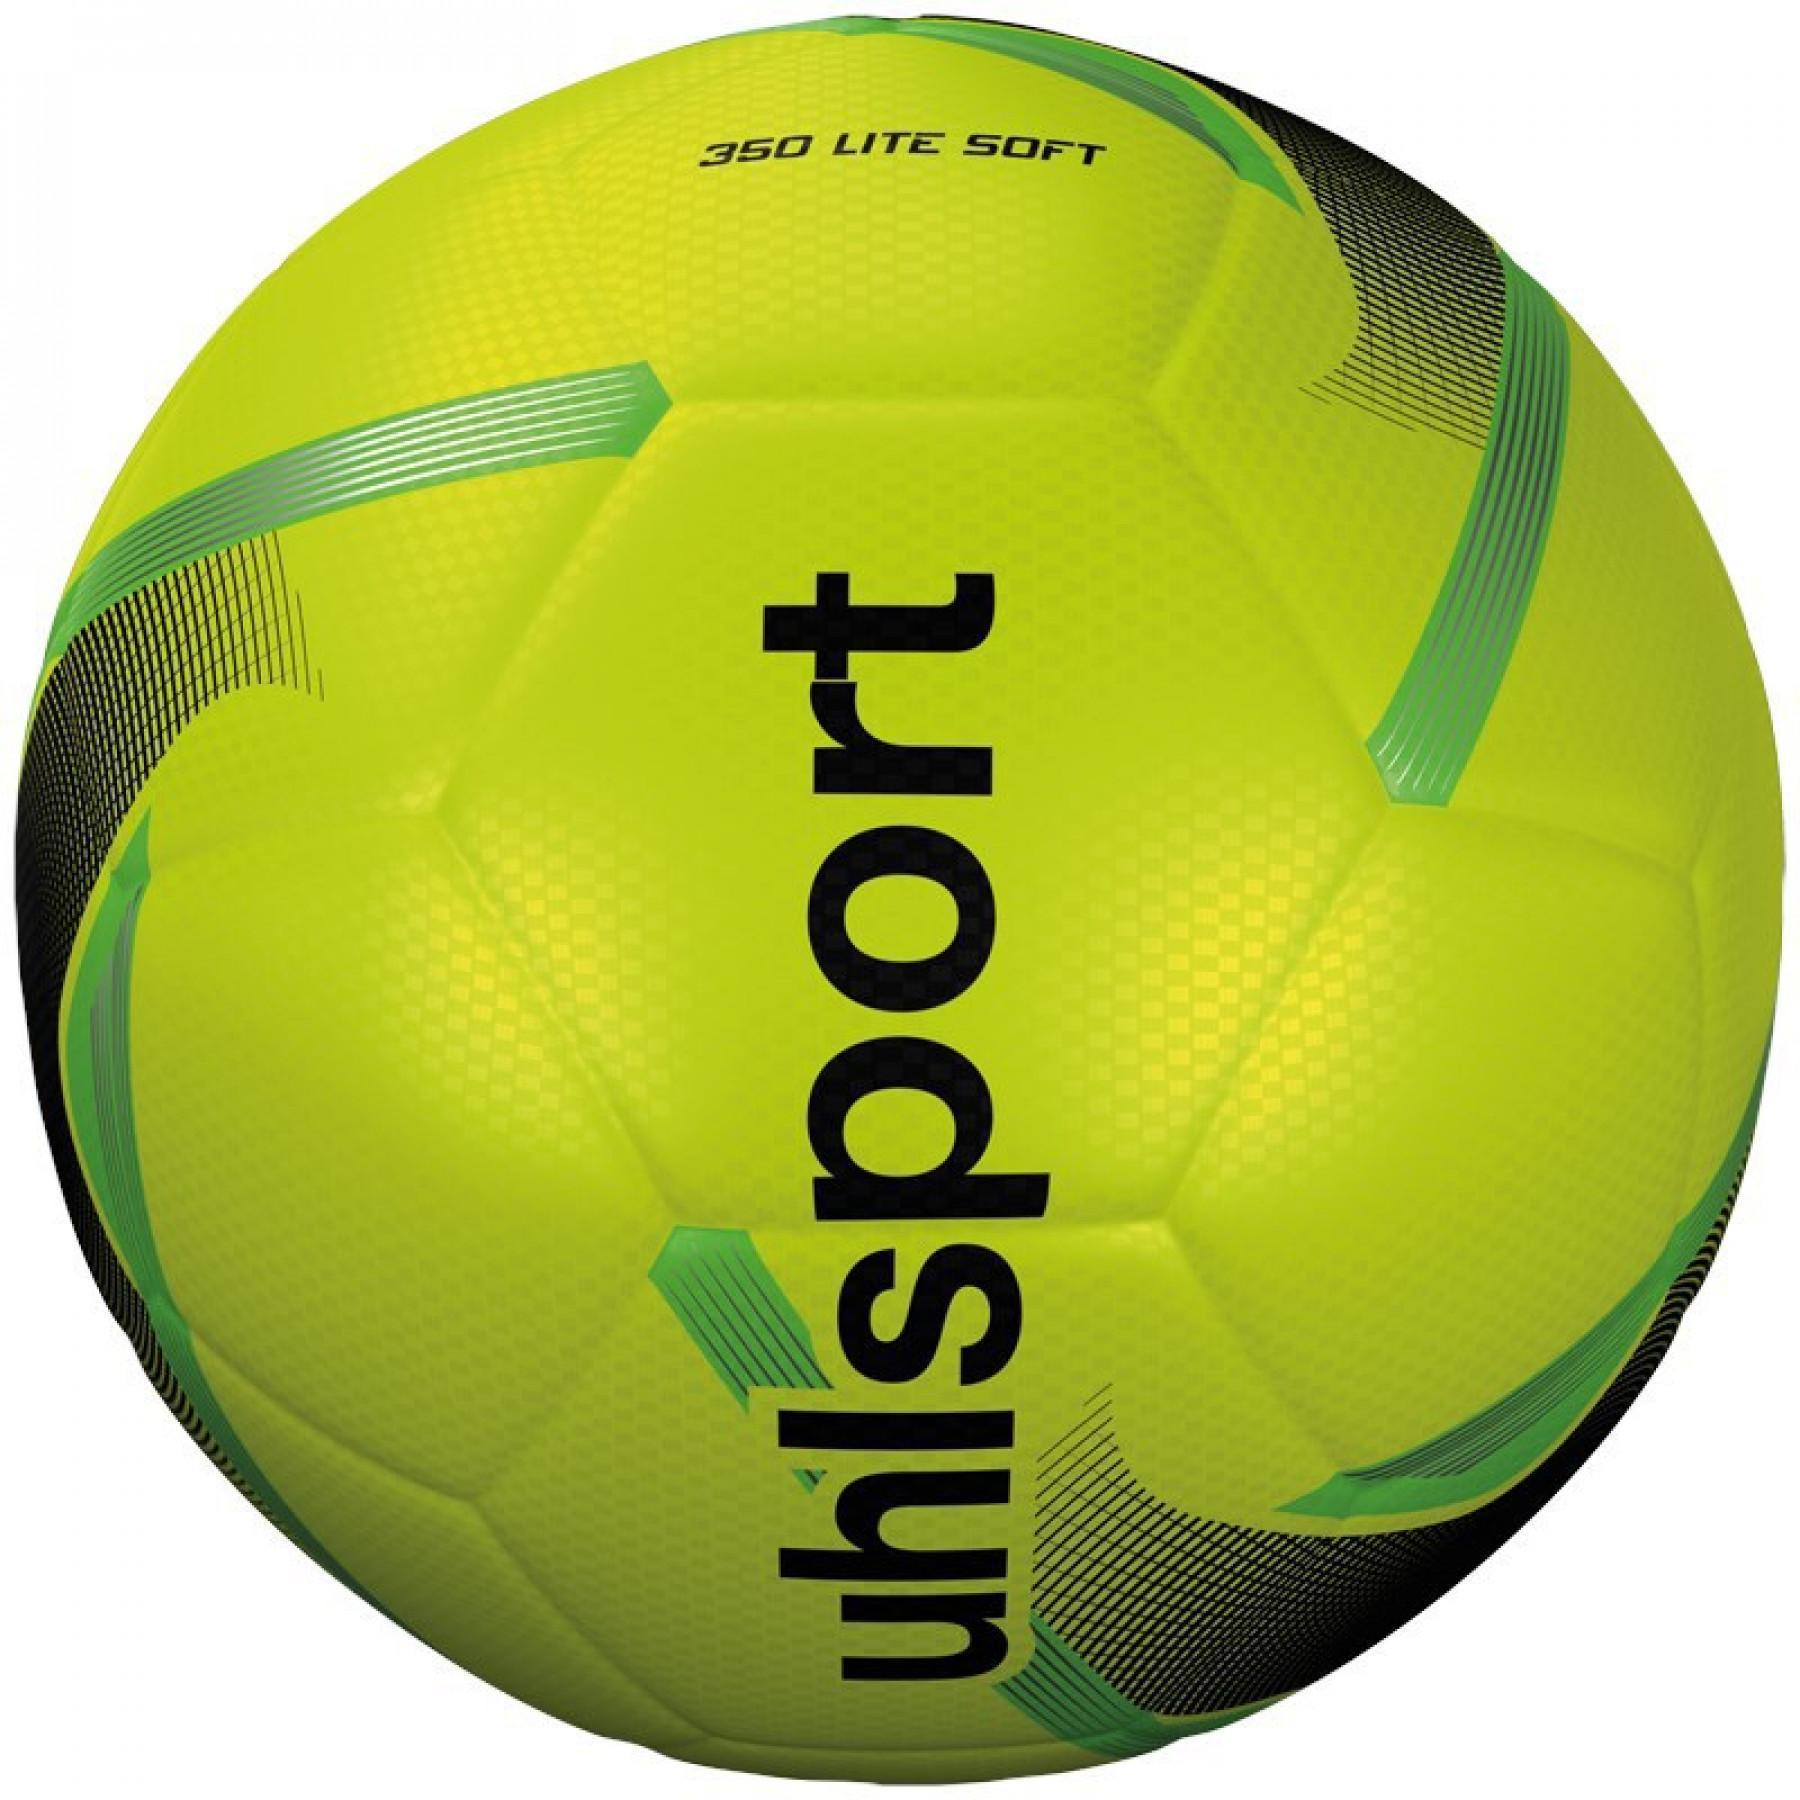 Children's ball Uhlsport 350 Lite Soft